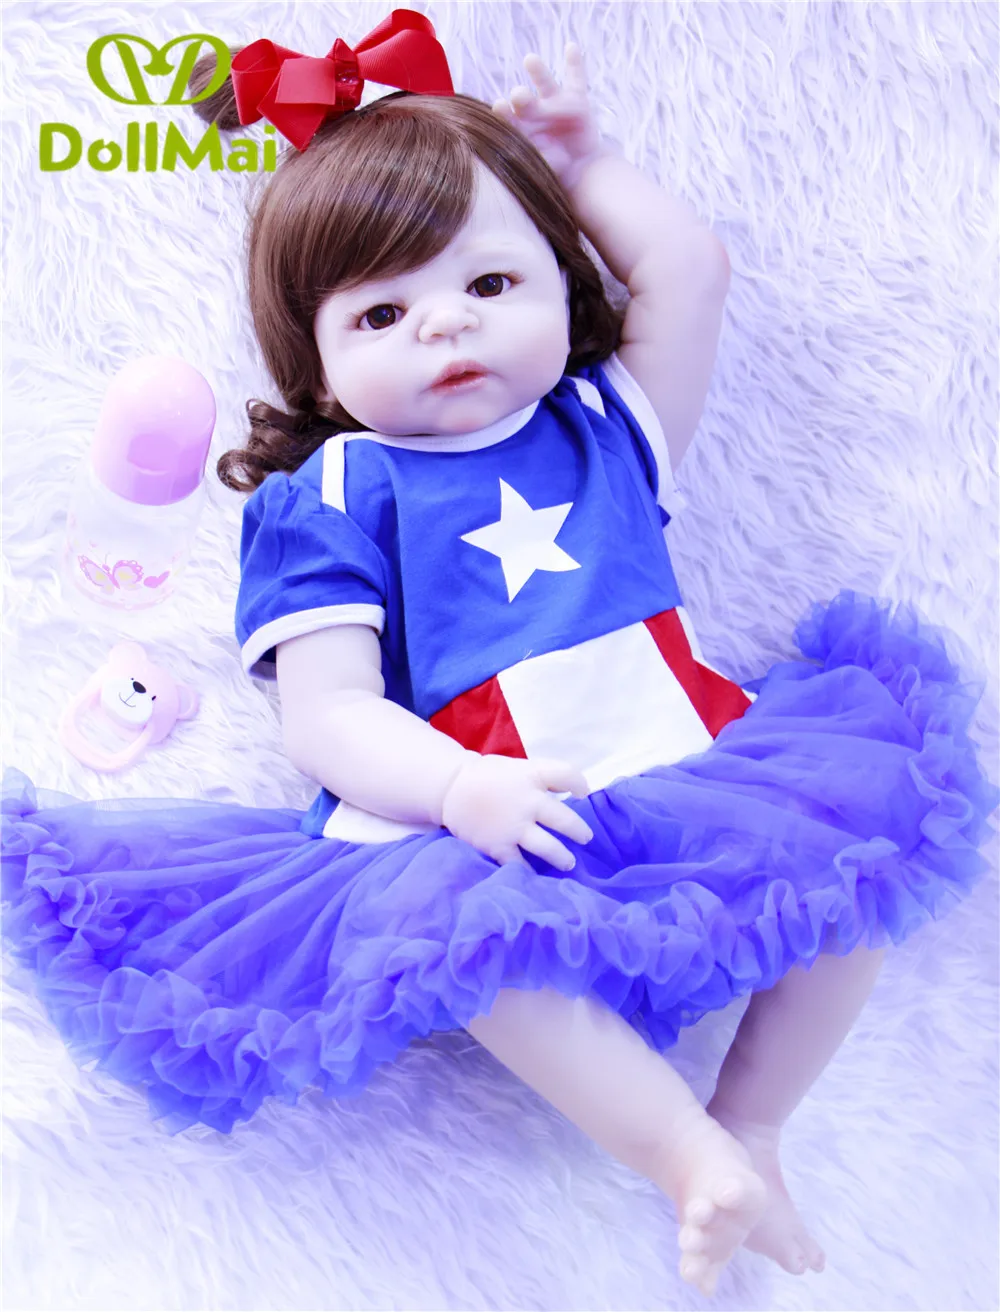 Оригинальные куклы DollMai настоящие для новорожденных 57 см полностью | Отзывы и видеообзор